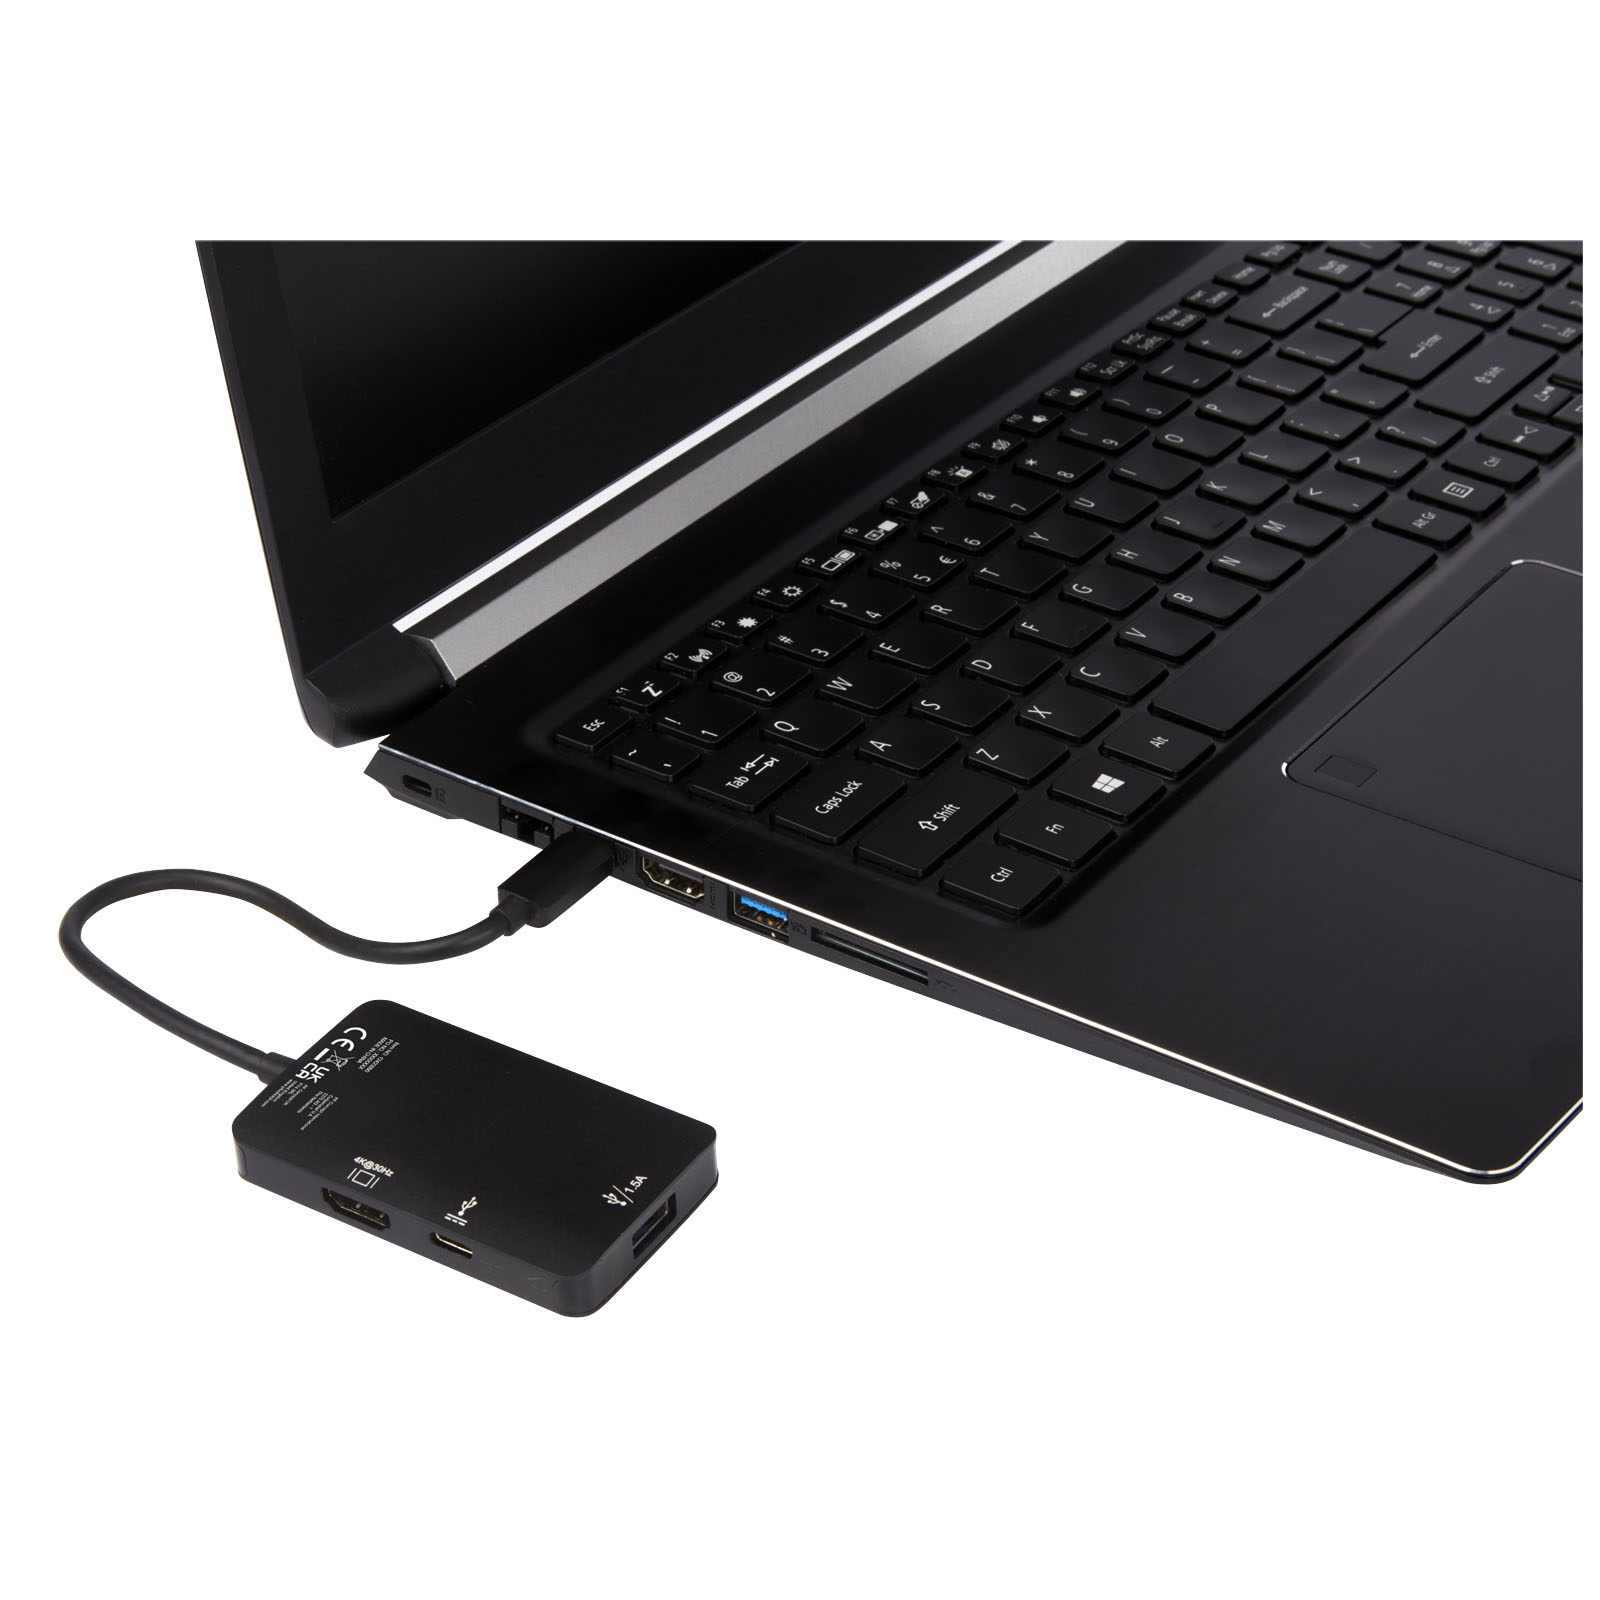 Accessoires pour ordinateur publicitaires - Adaptateur multimédia Type-C en aluminium ADAPT (USB-A / Type-C / HDMI) - 4